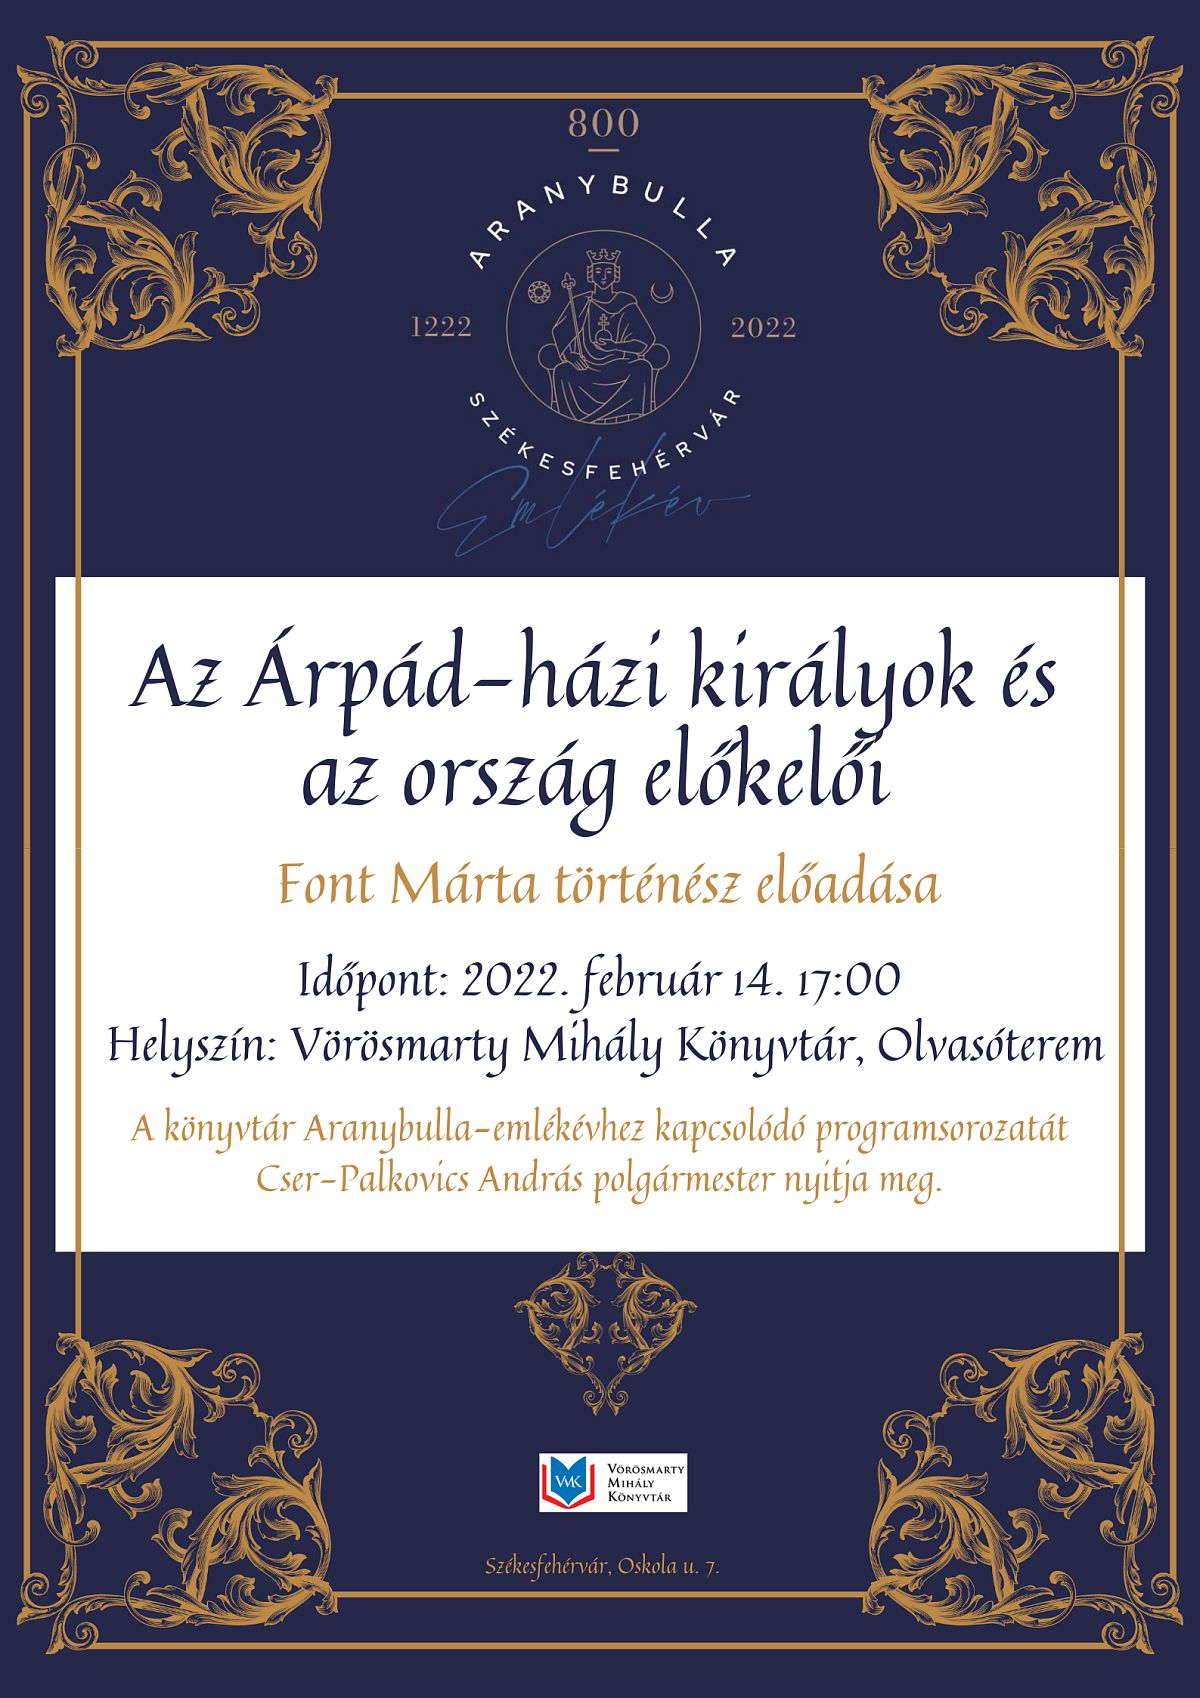 Árpád-házi királyok és az ország előkelői - Font Márta előadása a Vörösmarty Mihály Könyvtárban